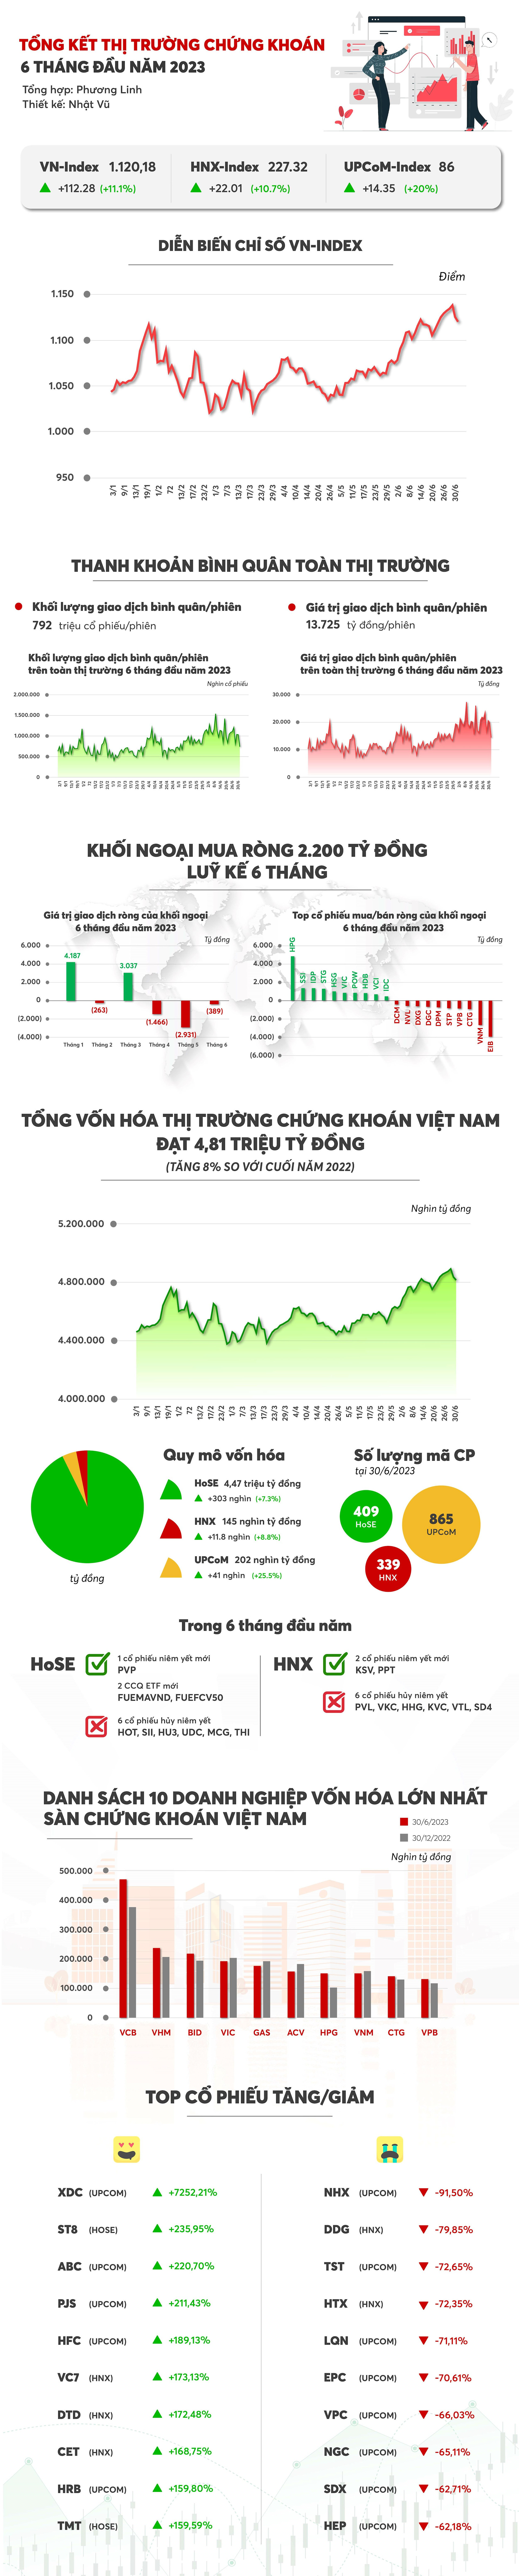 Chứng khoán Việt Nam 6 tháng đầu năm 2023: VN-Index tăng hơn 11%, một cổ phiếu &quot;lạ&quot; bốc đầu tăng gần 73 lần - Ảnh 1.